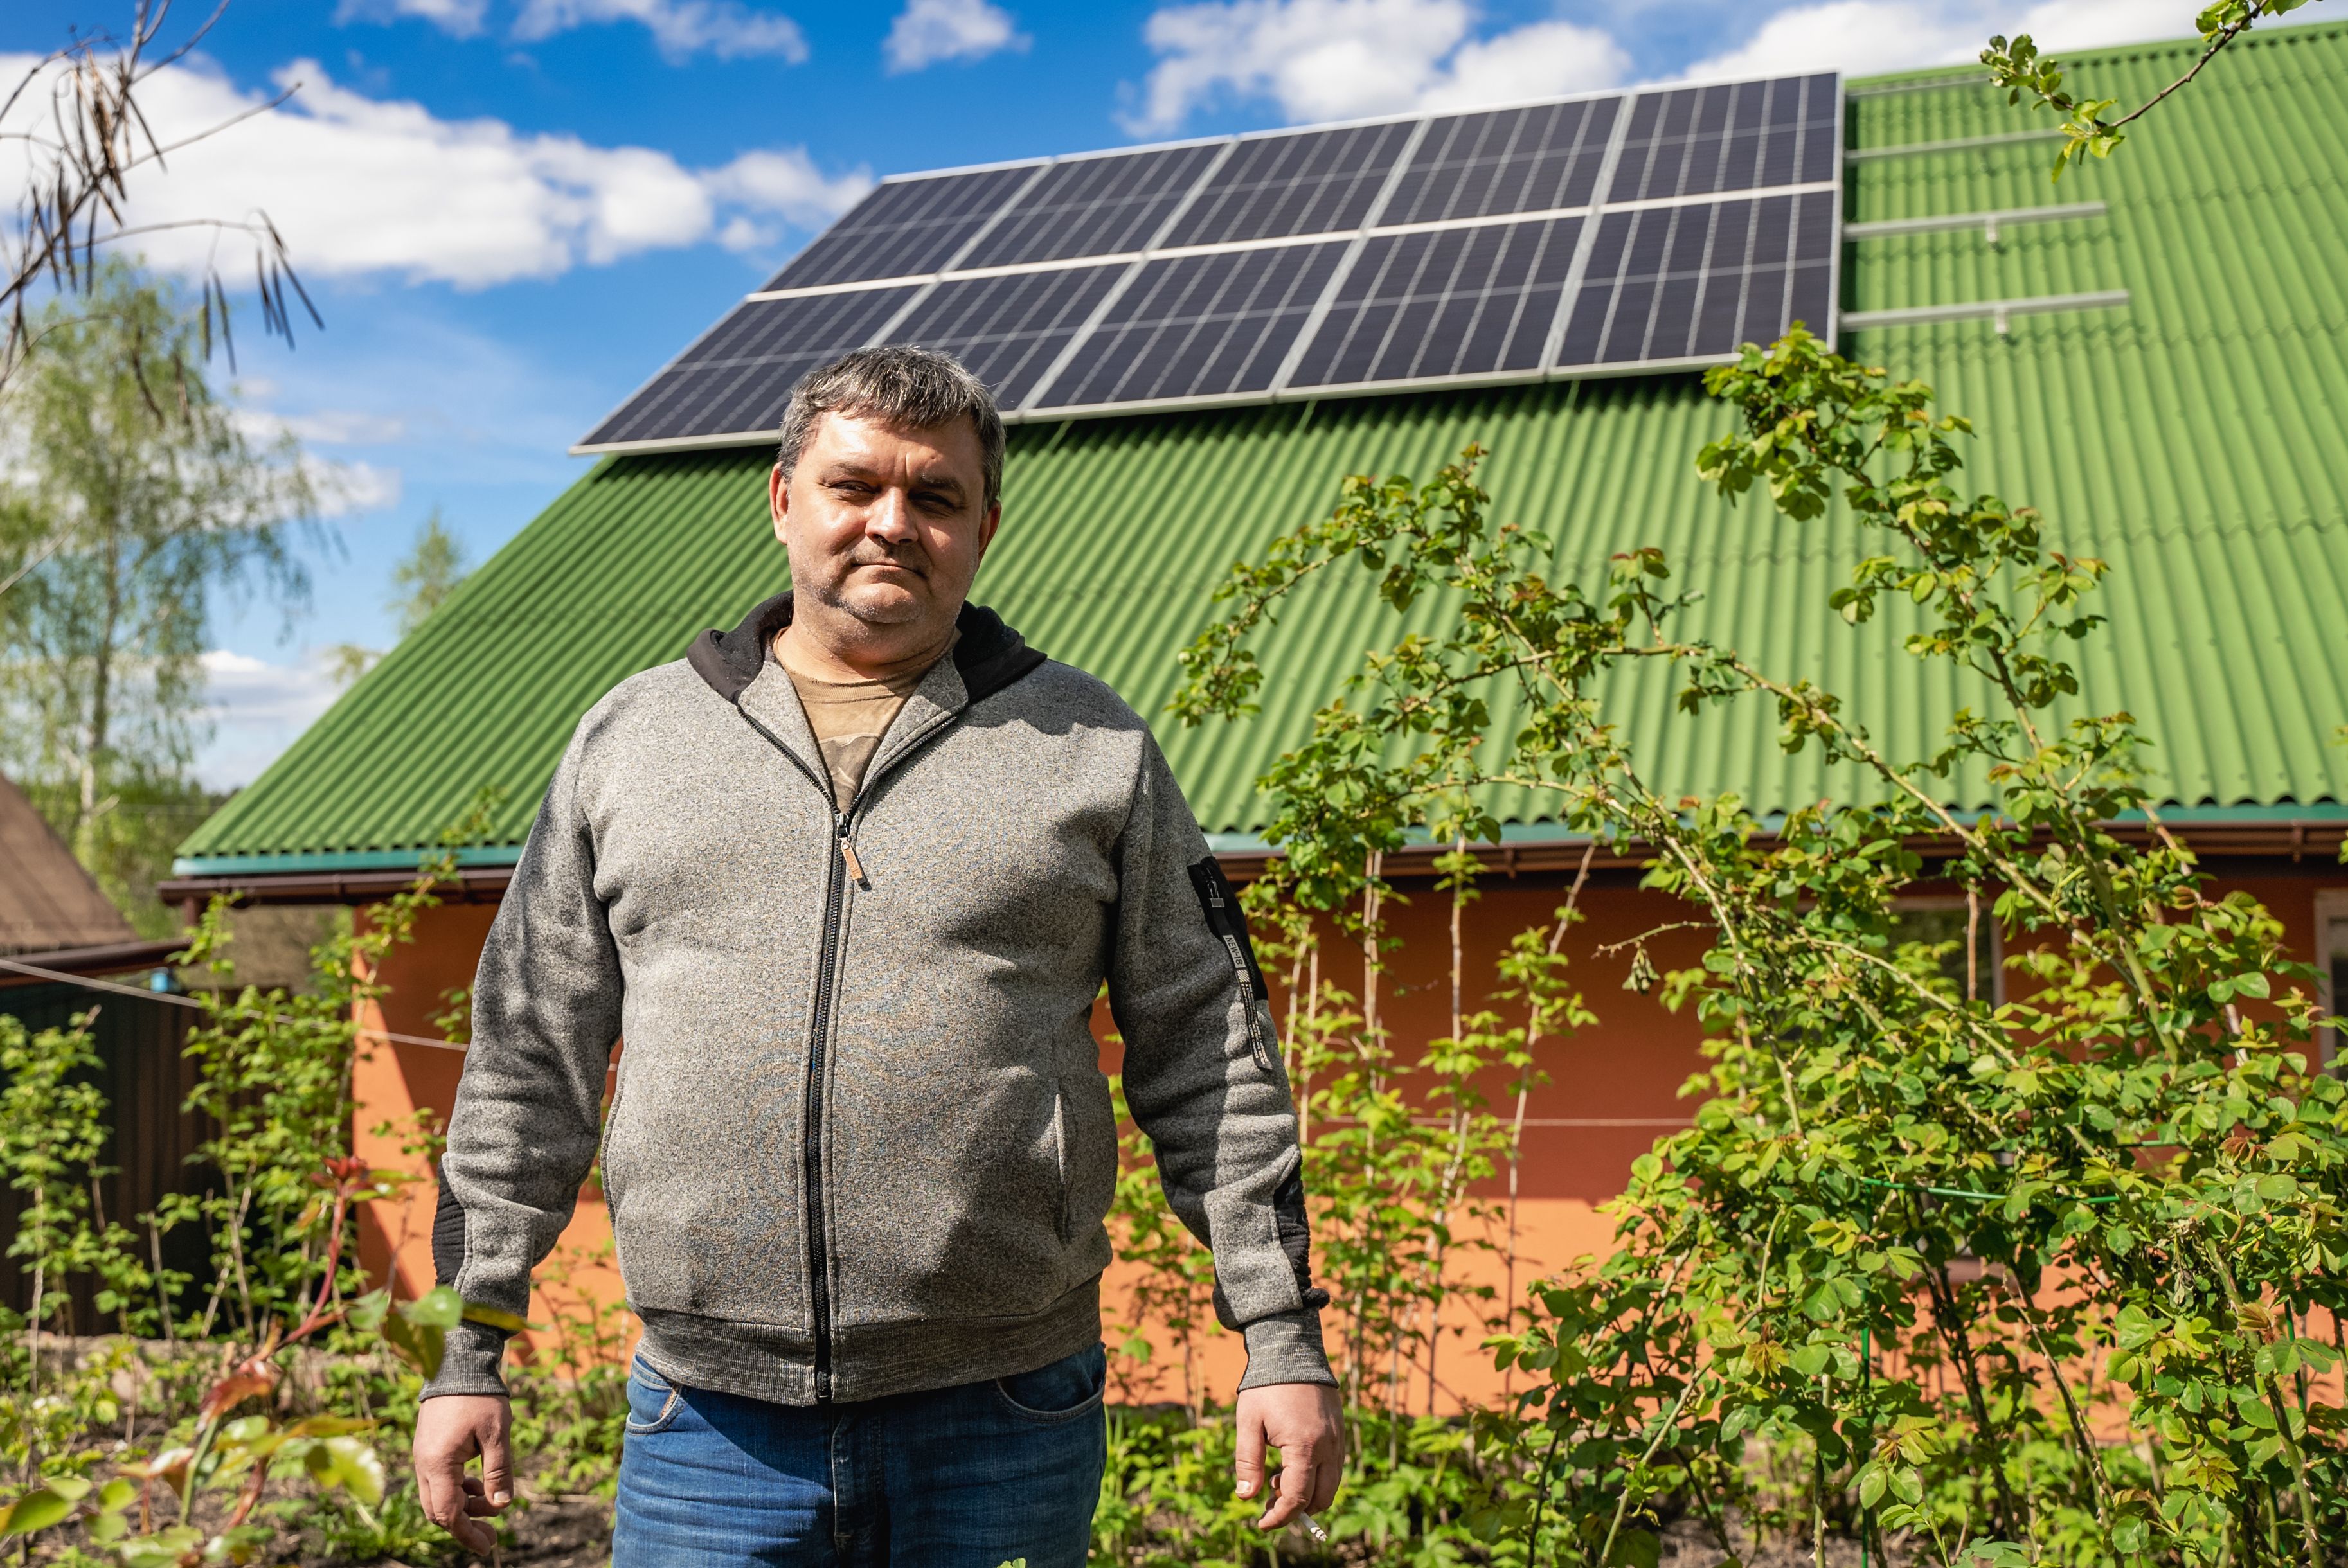 Пів року автономності: власник про досвід використання домашньої сонячної станції